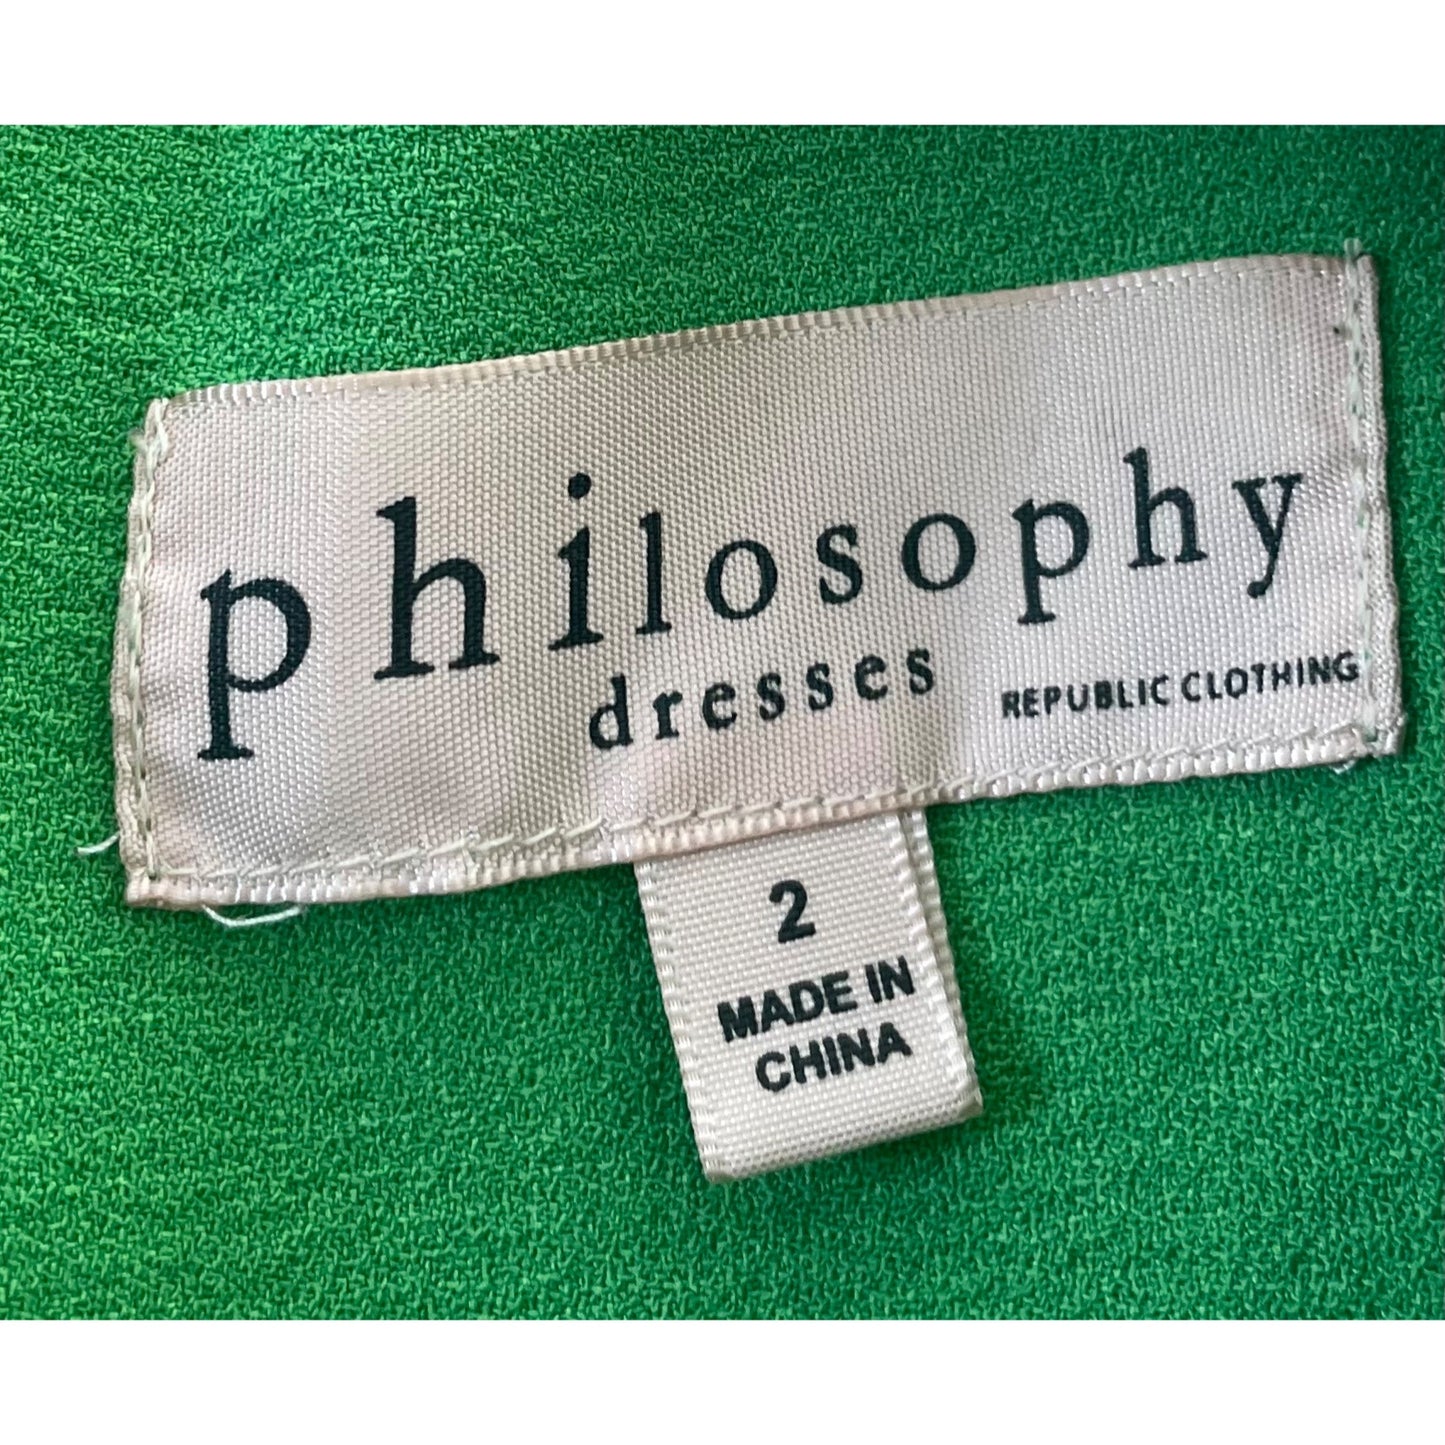 Philosophy Women's Size 2 Green Sheath Dress